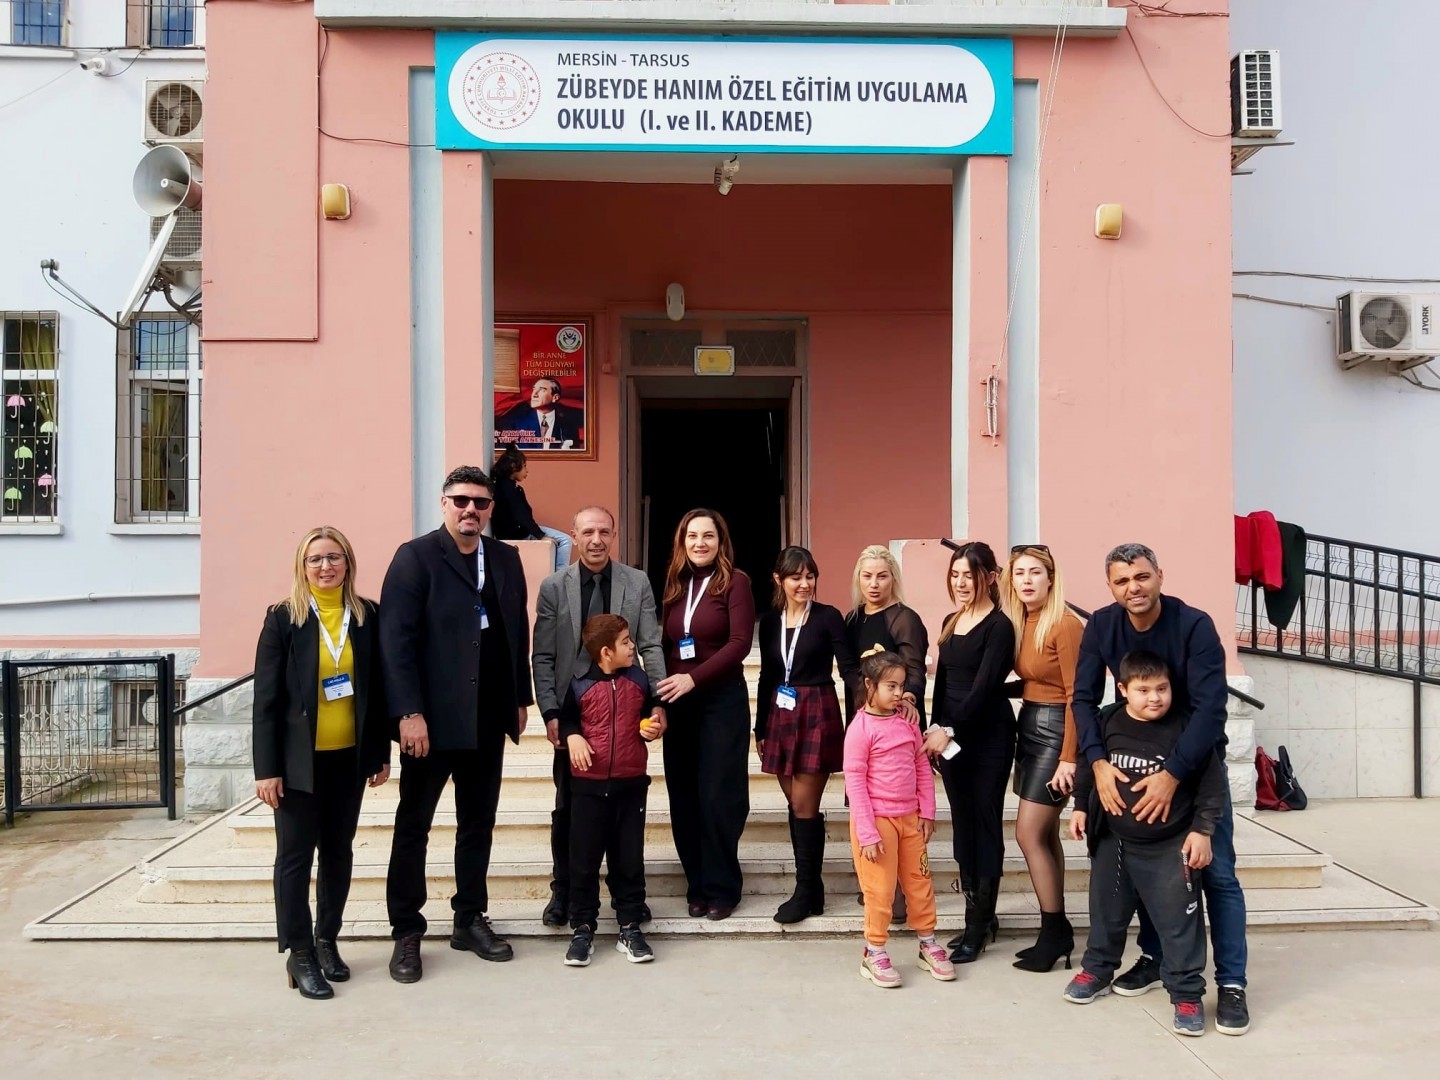 Engelliler Haftasi Sebebiyle Tarsus Zübeyde Hanım Engelliler Okulu'na ziyaret